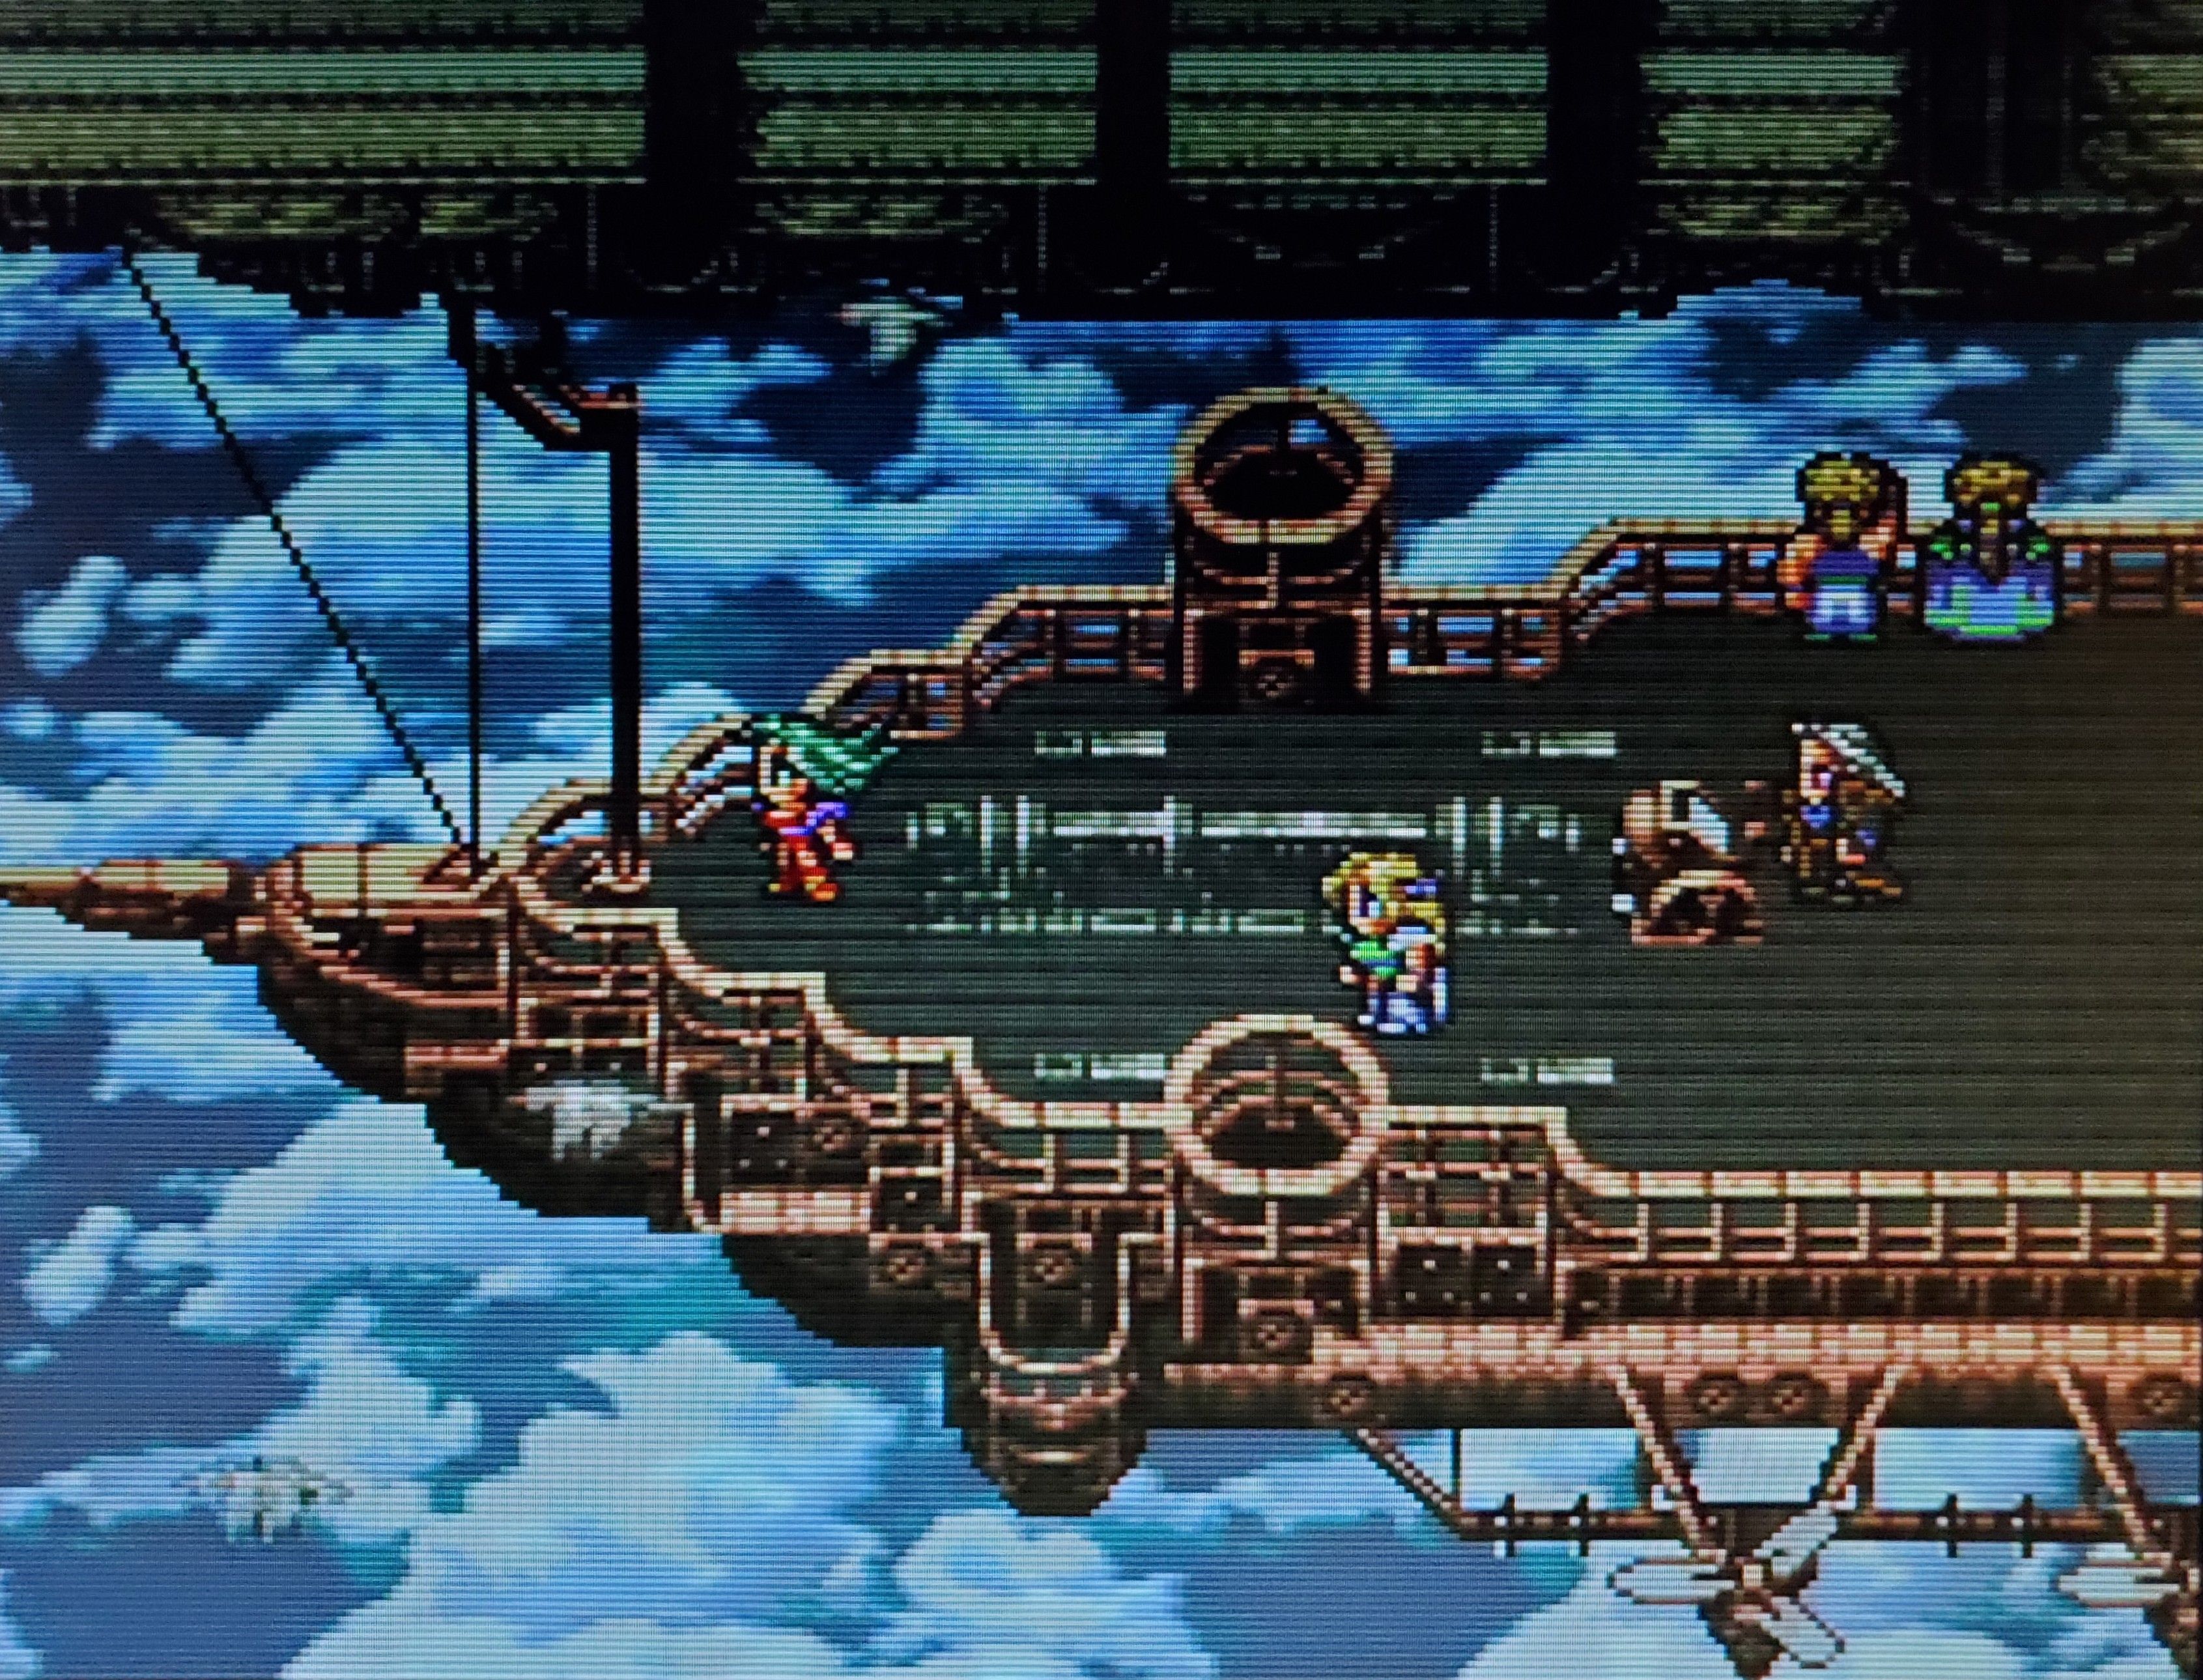 Final Fantasy VI (Super Nintendo) – Twentieth Century Gamer